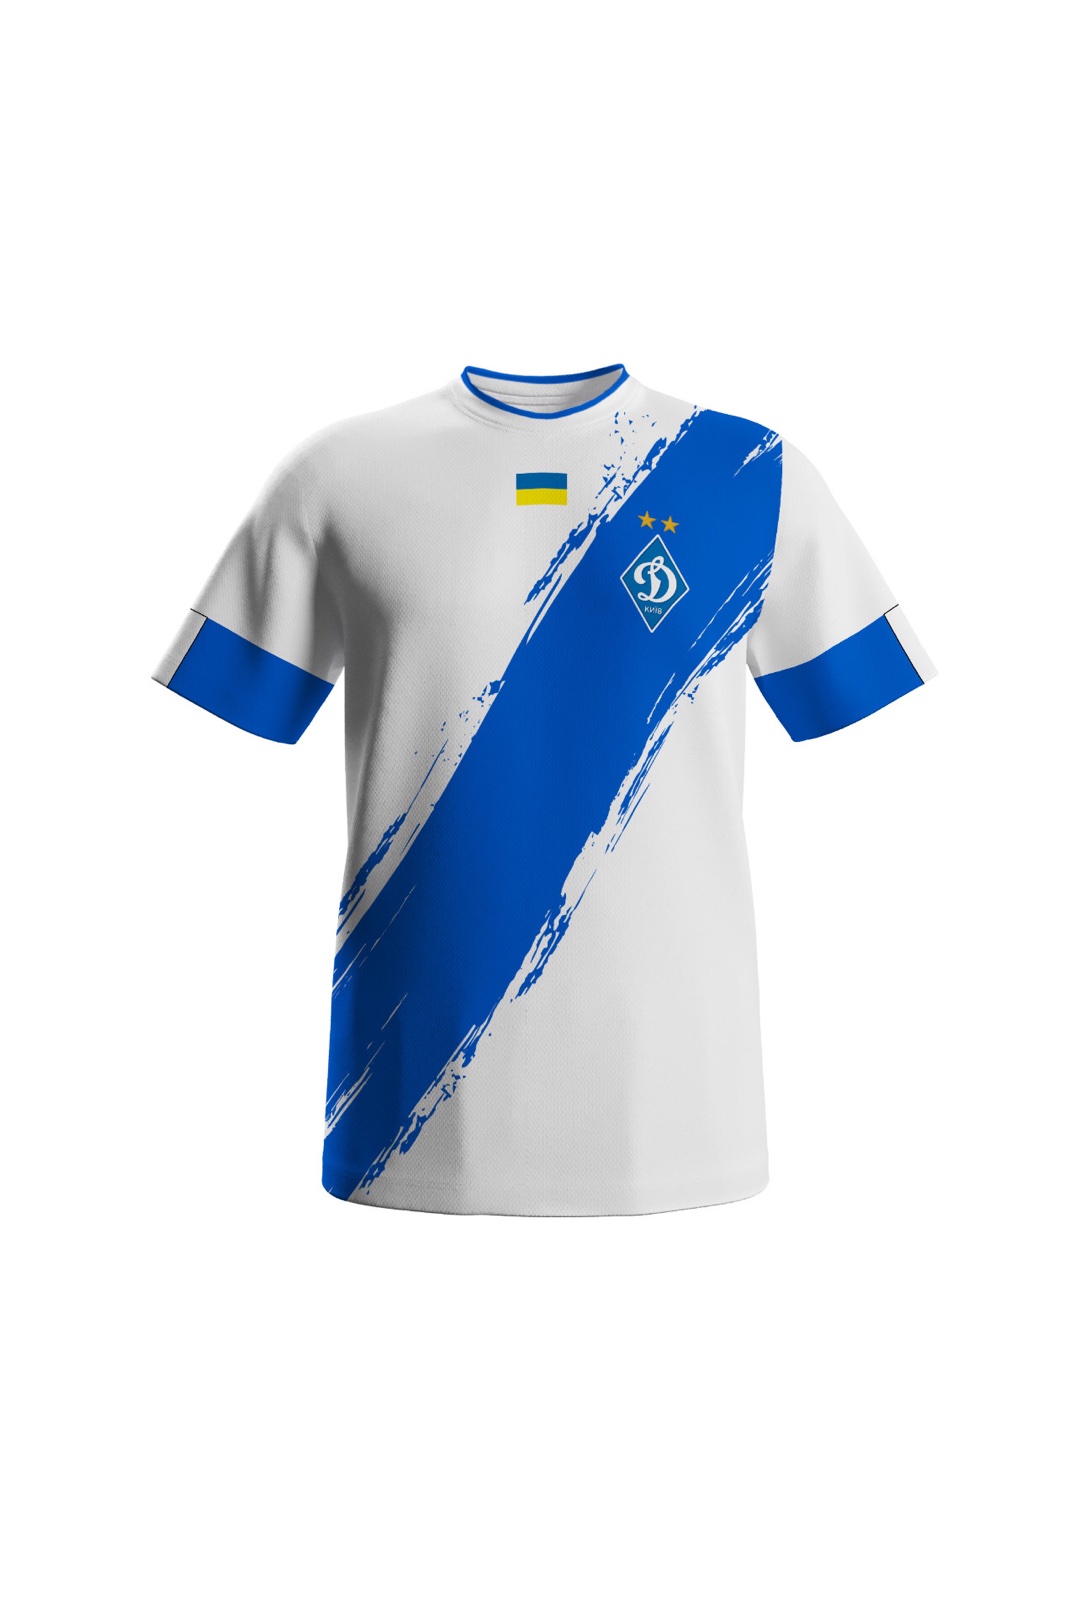 Dynamo Kyiv white training t-shirt